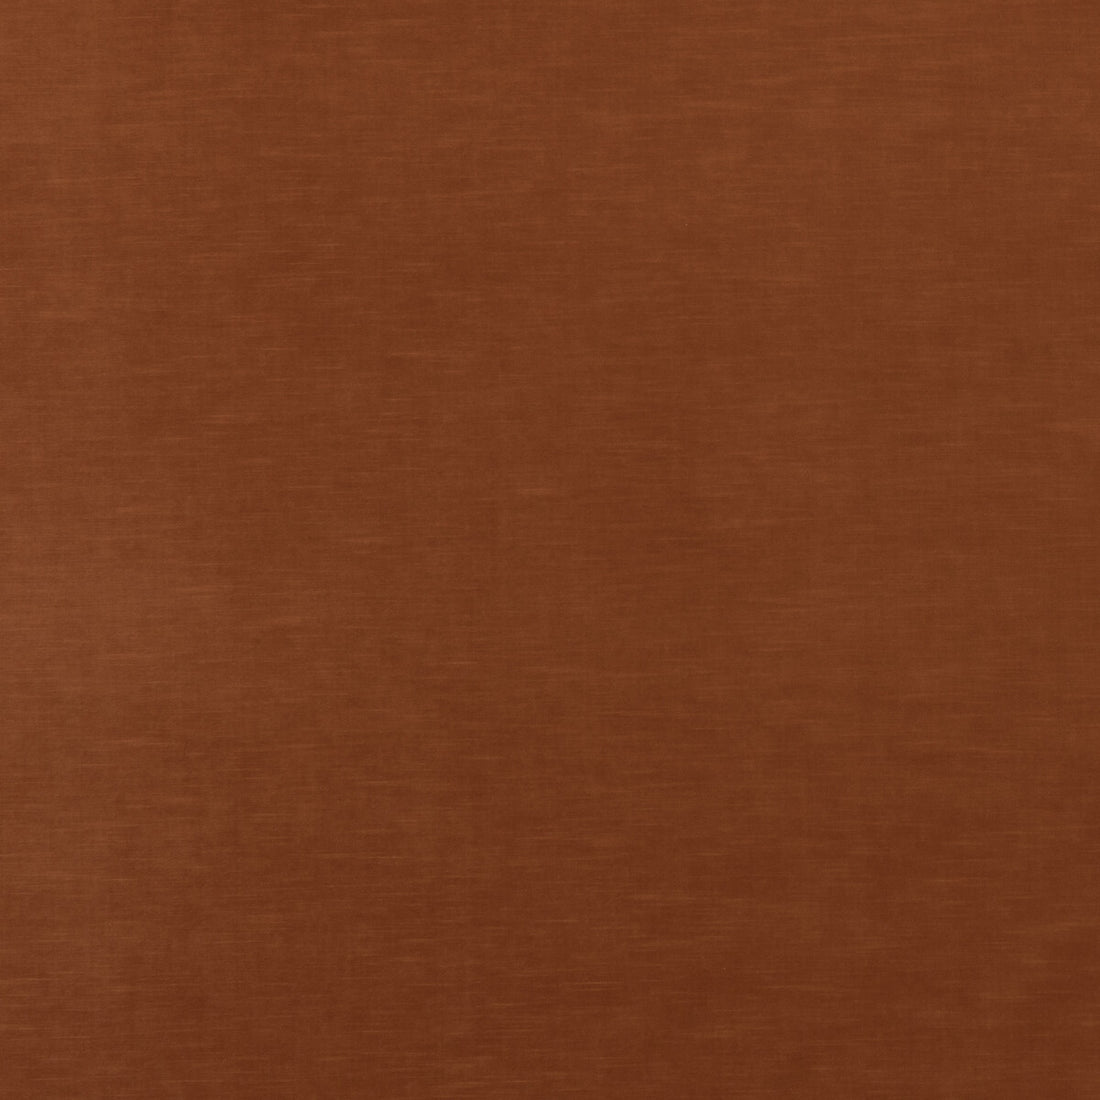 Quintessential Velvet fabric in tawny color - pattern ED85359.344.0 - by Threads in the Quintessential Velvet collection